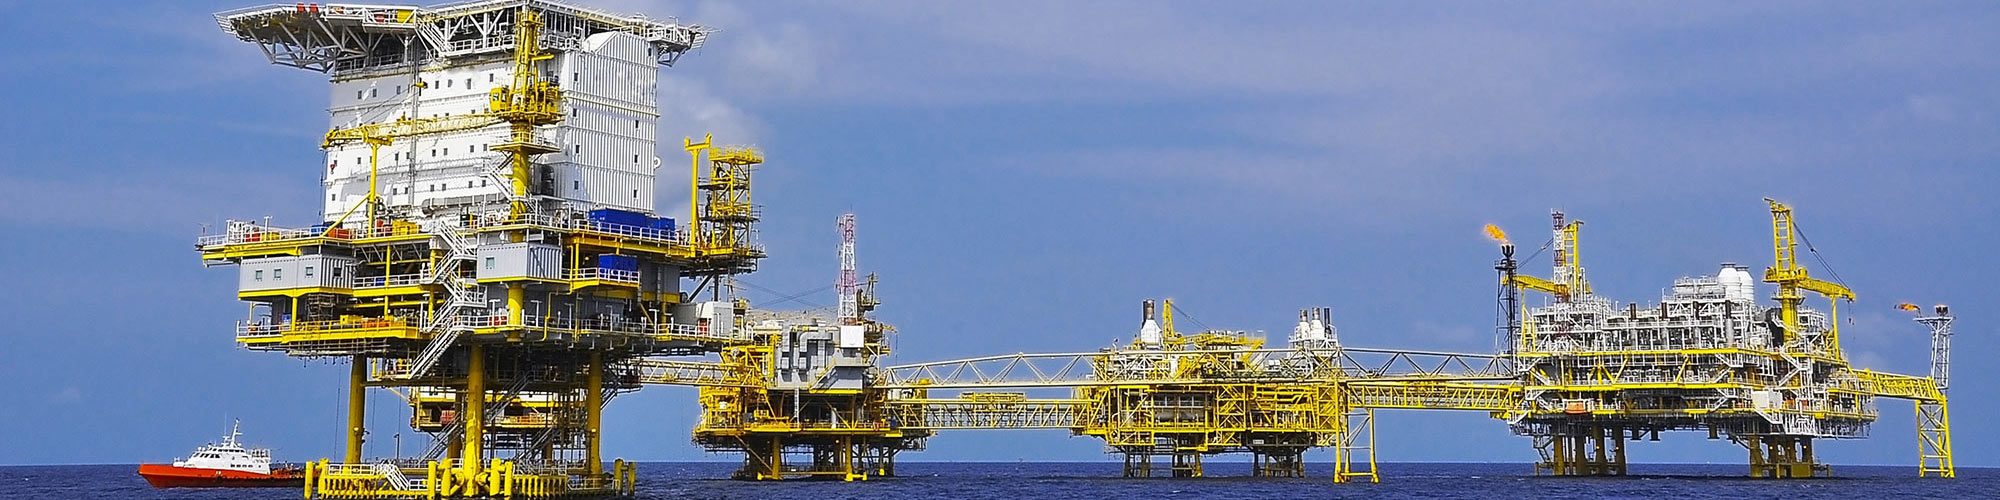 Aplicatii - Petrol, gaze - Prevenirea activa a daunelor in aplicatiile industriei de petrol si gaze - Offshore (pe mare) - Instalatii de foraj si instalatii plutitoare de productie